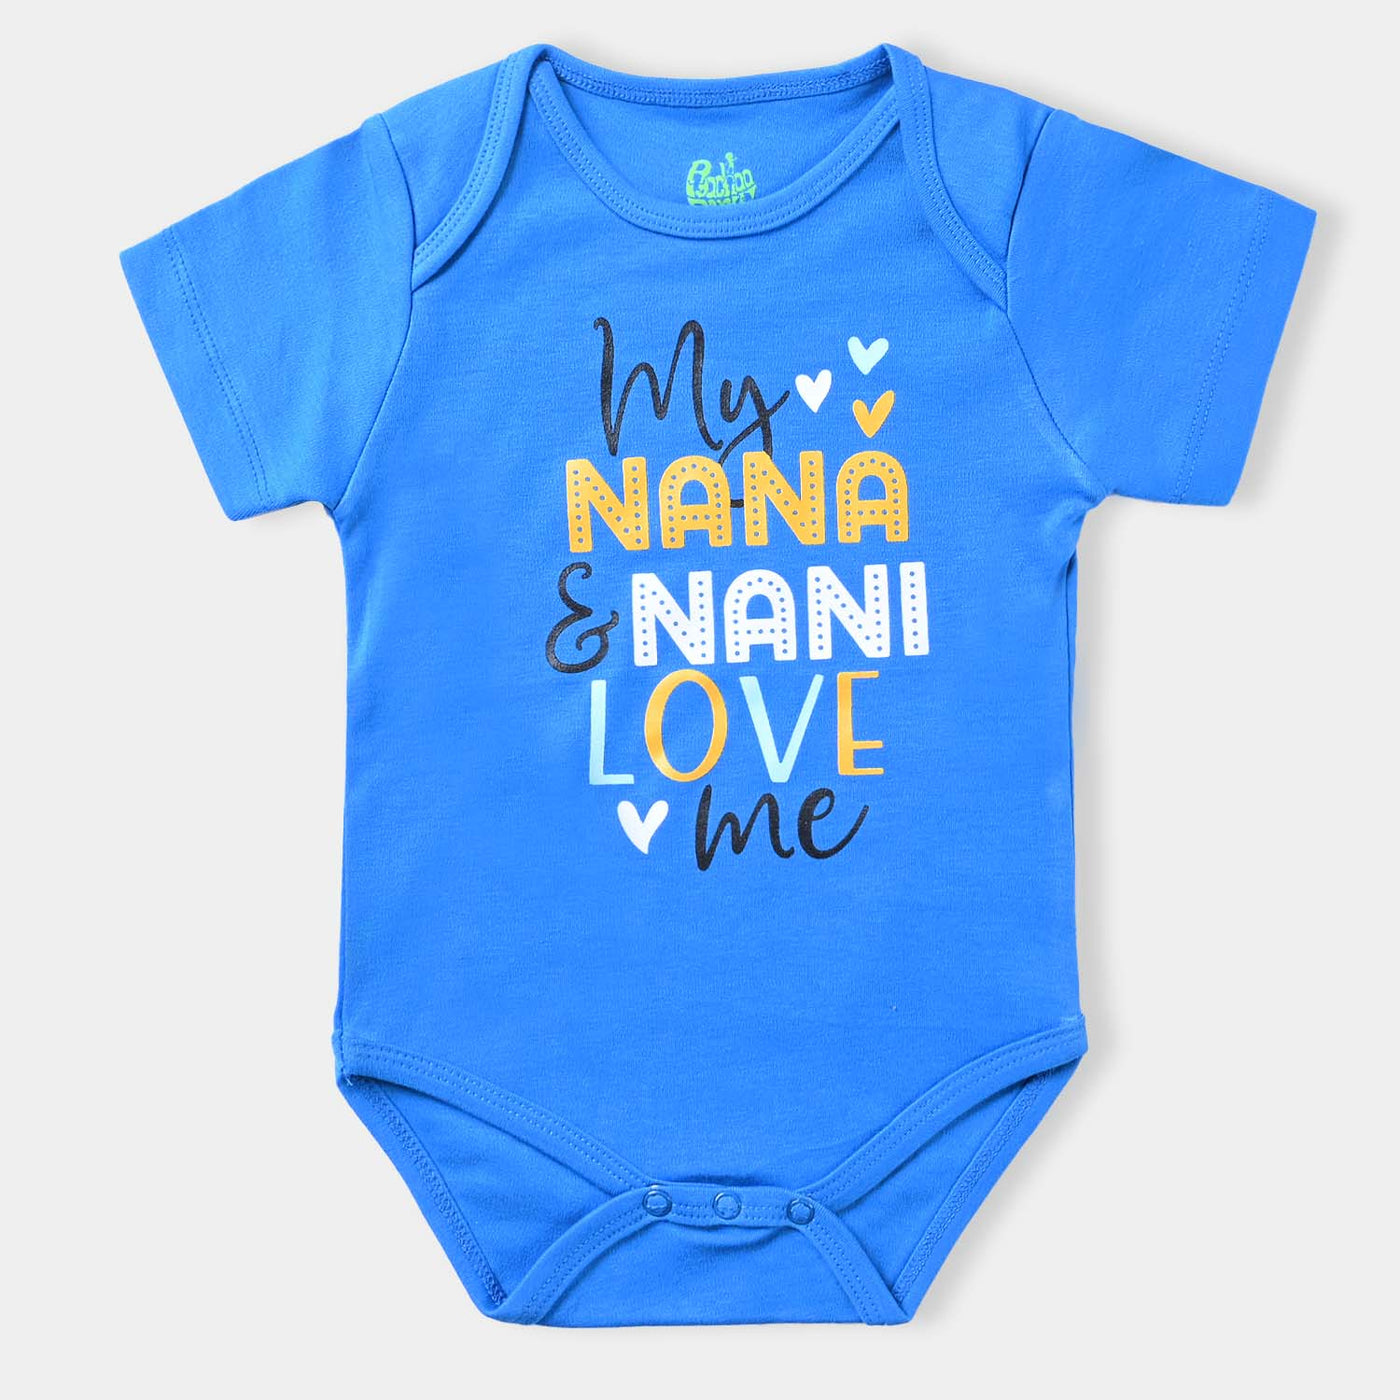 Infant Unisex Cotton Romper Nana & Nani-Cream Puff